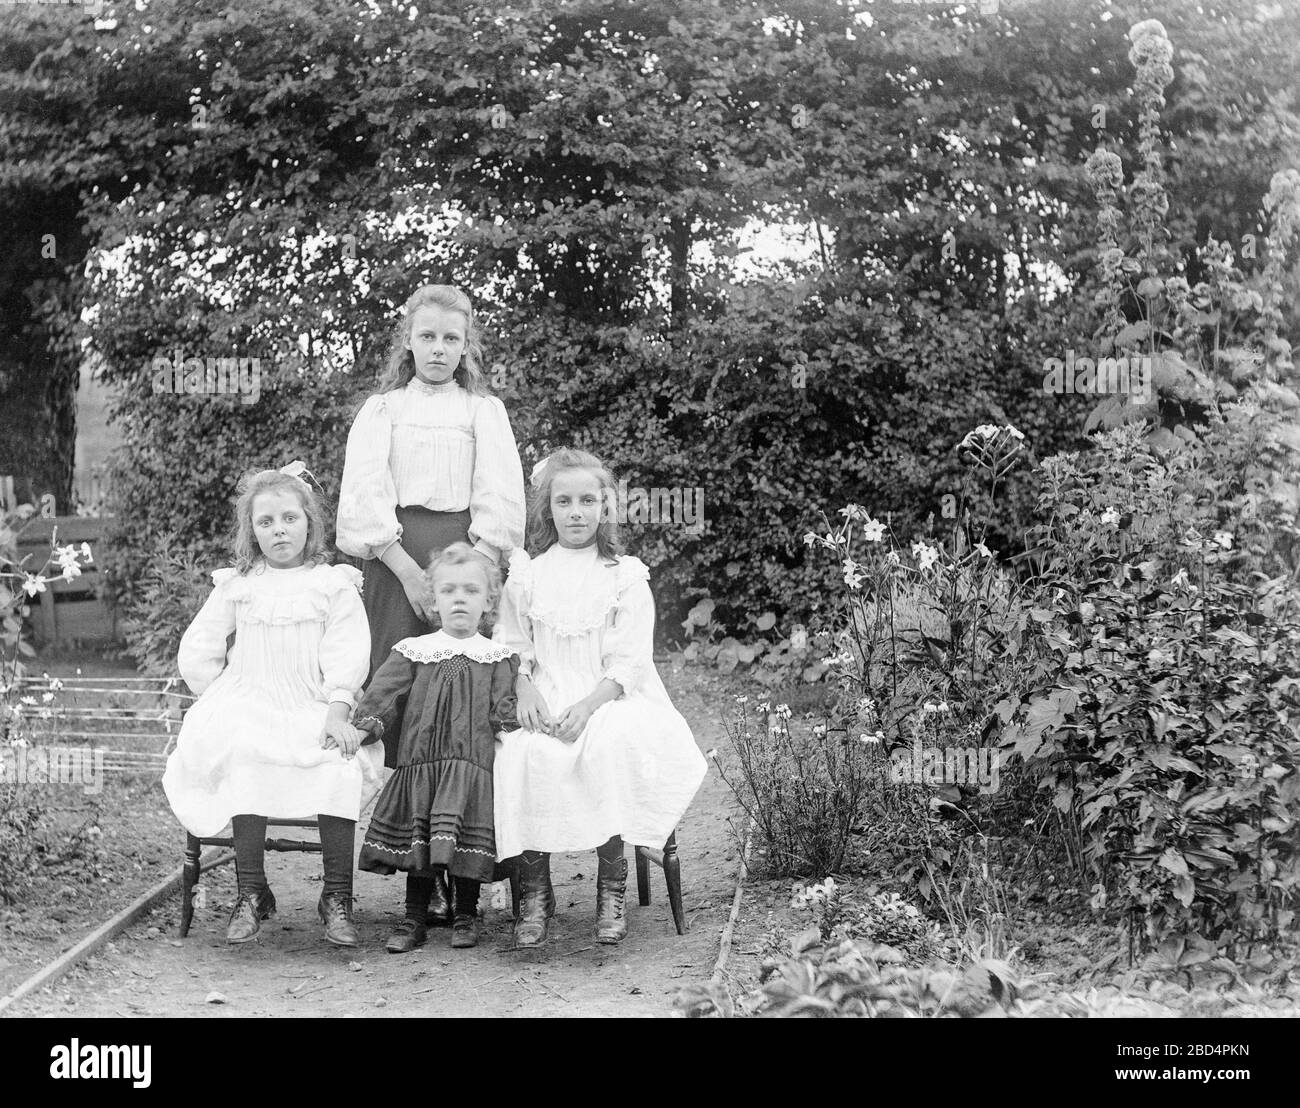 Une photo ancienne en anglais vintage noir et blanc édouardien montrant quatre sœurs posant pour le photographe dans leur jardin arrière. La sœur aînée debout à l'arrière, les deux soeurs moyennes assis sur des chaises, la plus jeune soeur debout entre elles. Banque D'Images